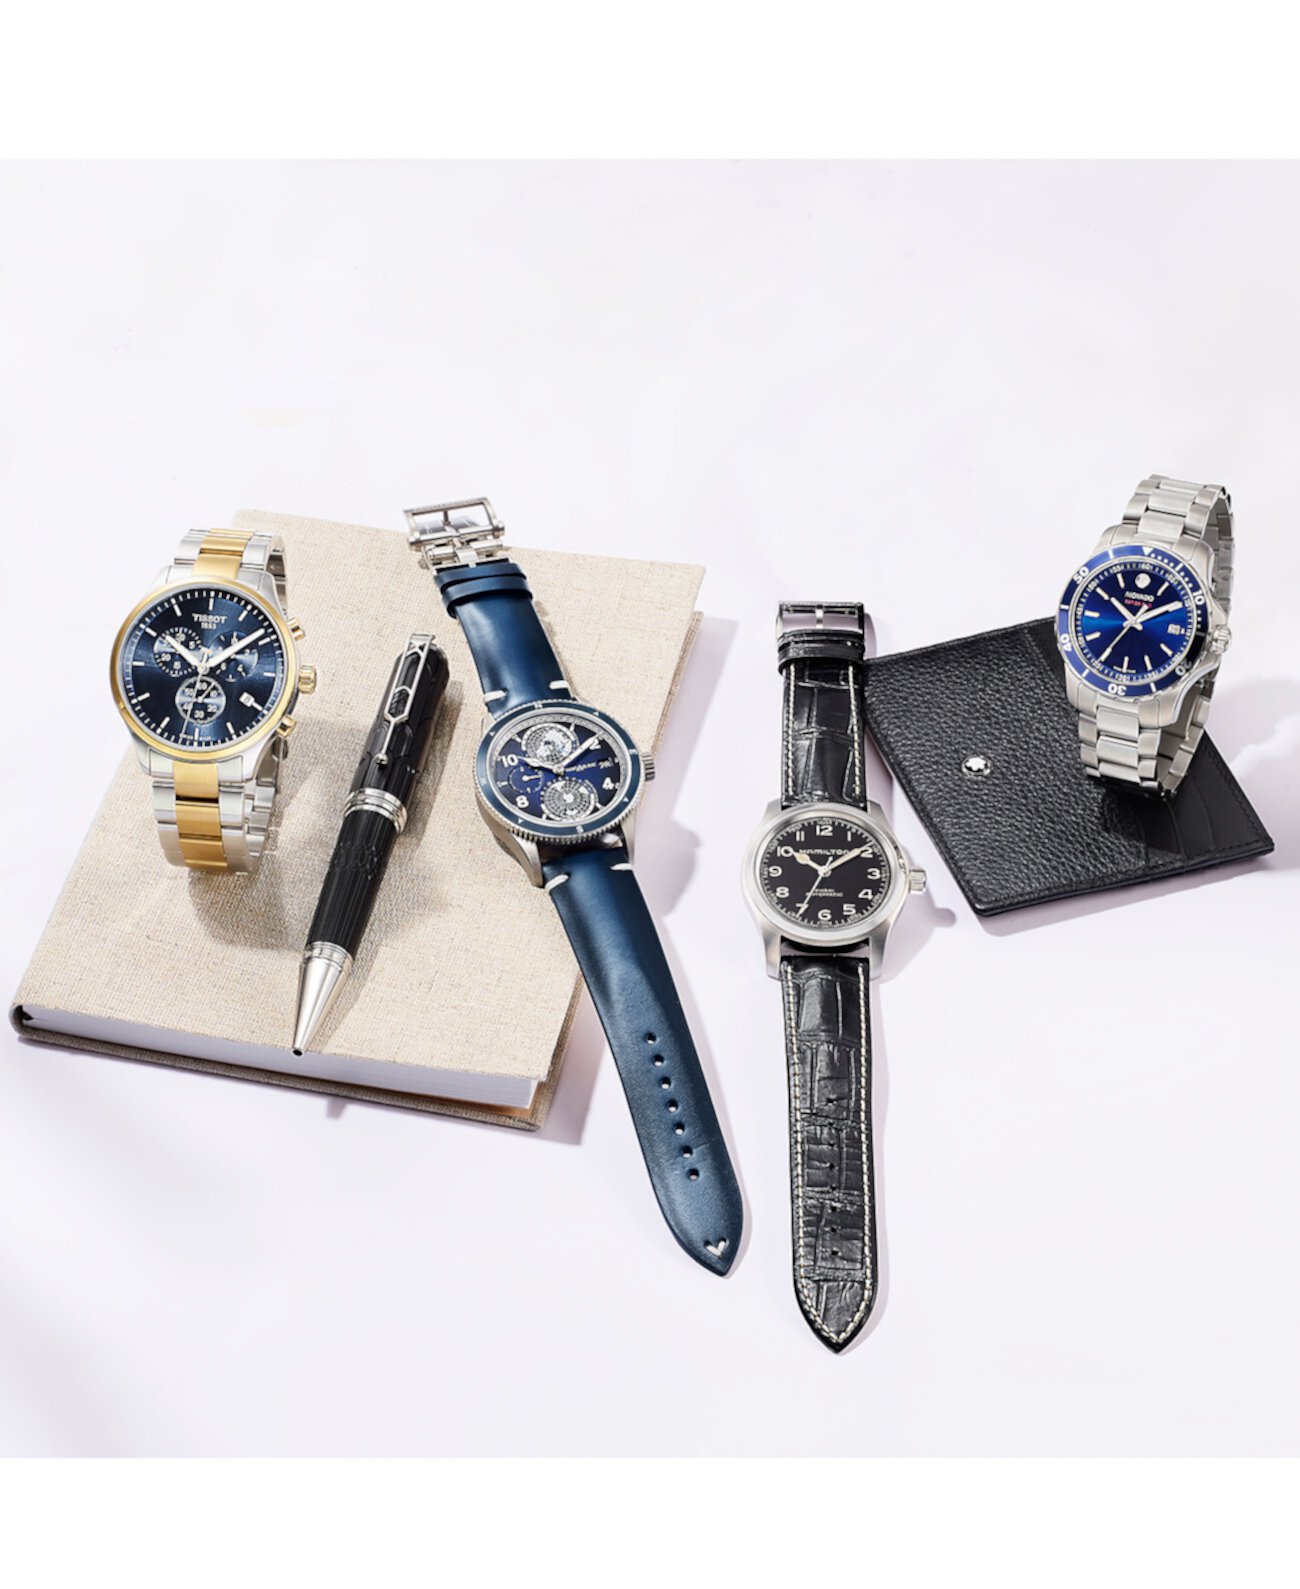 Мужские швейцарские часы с хронографом Chrono XL Classic двухцветные из нержавеющей стали с браслетом 45 мм Tissot